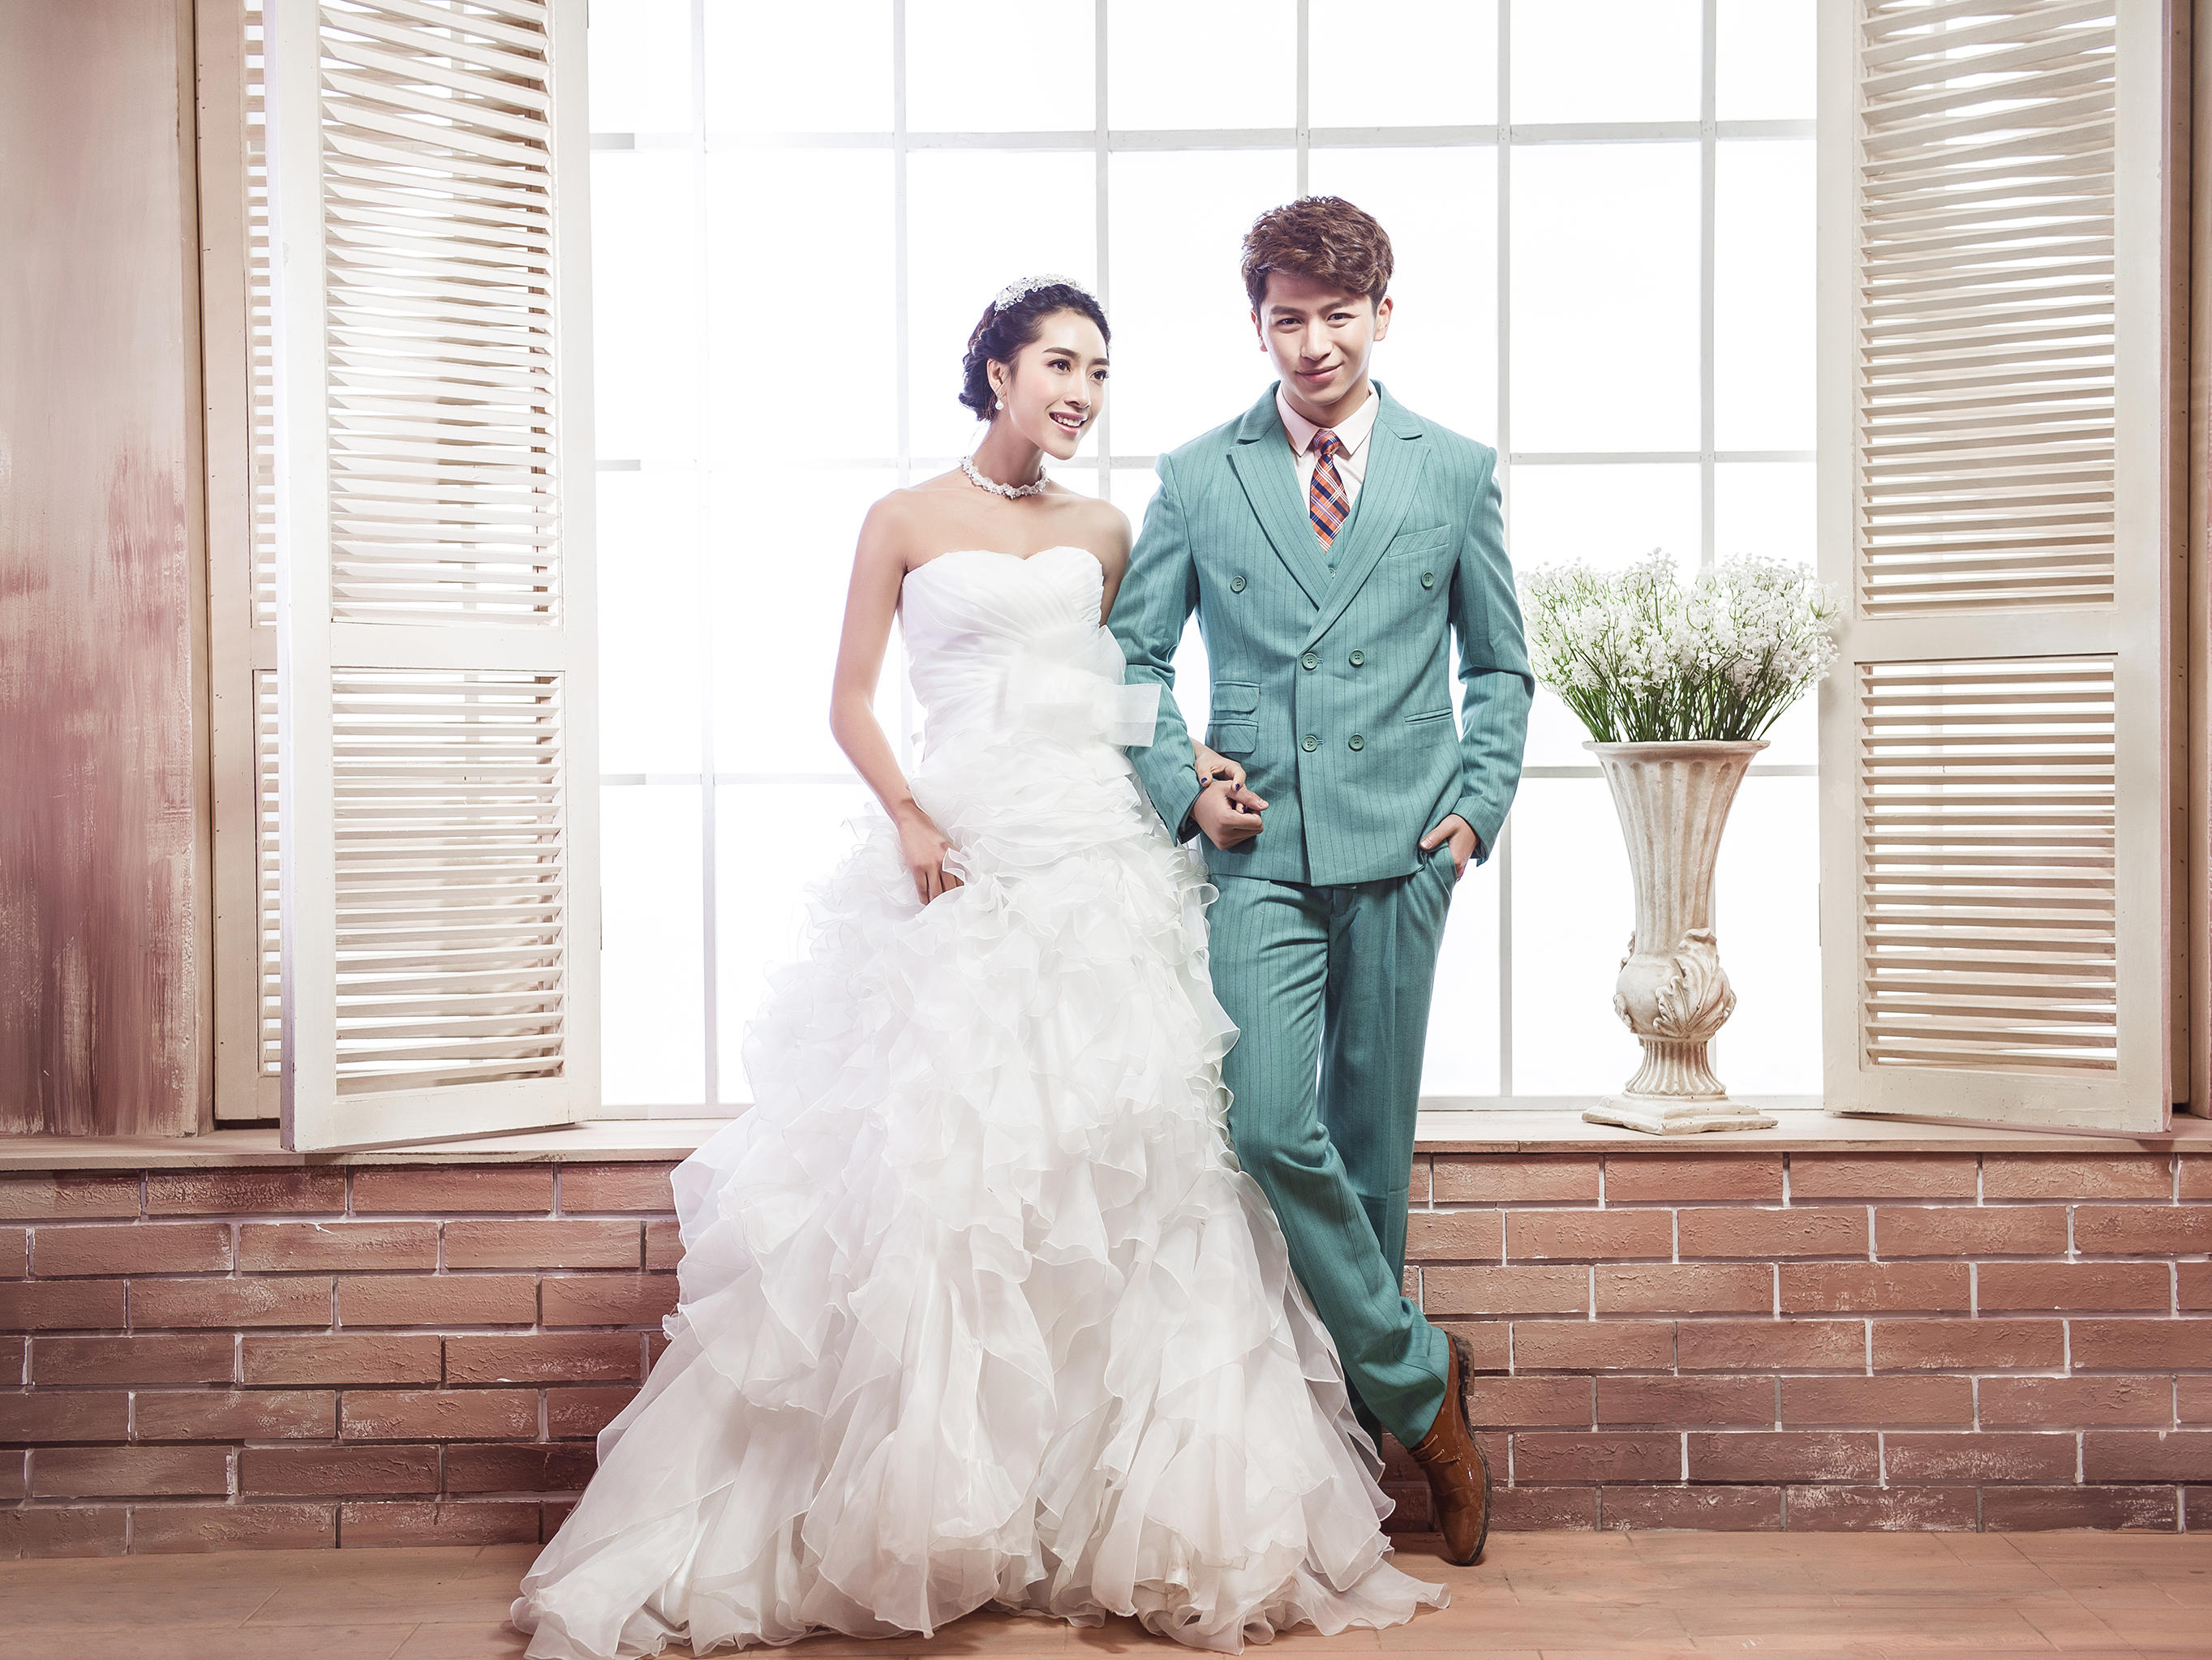 清新韩式婚纱照 让美丽瞬间永恒